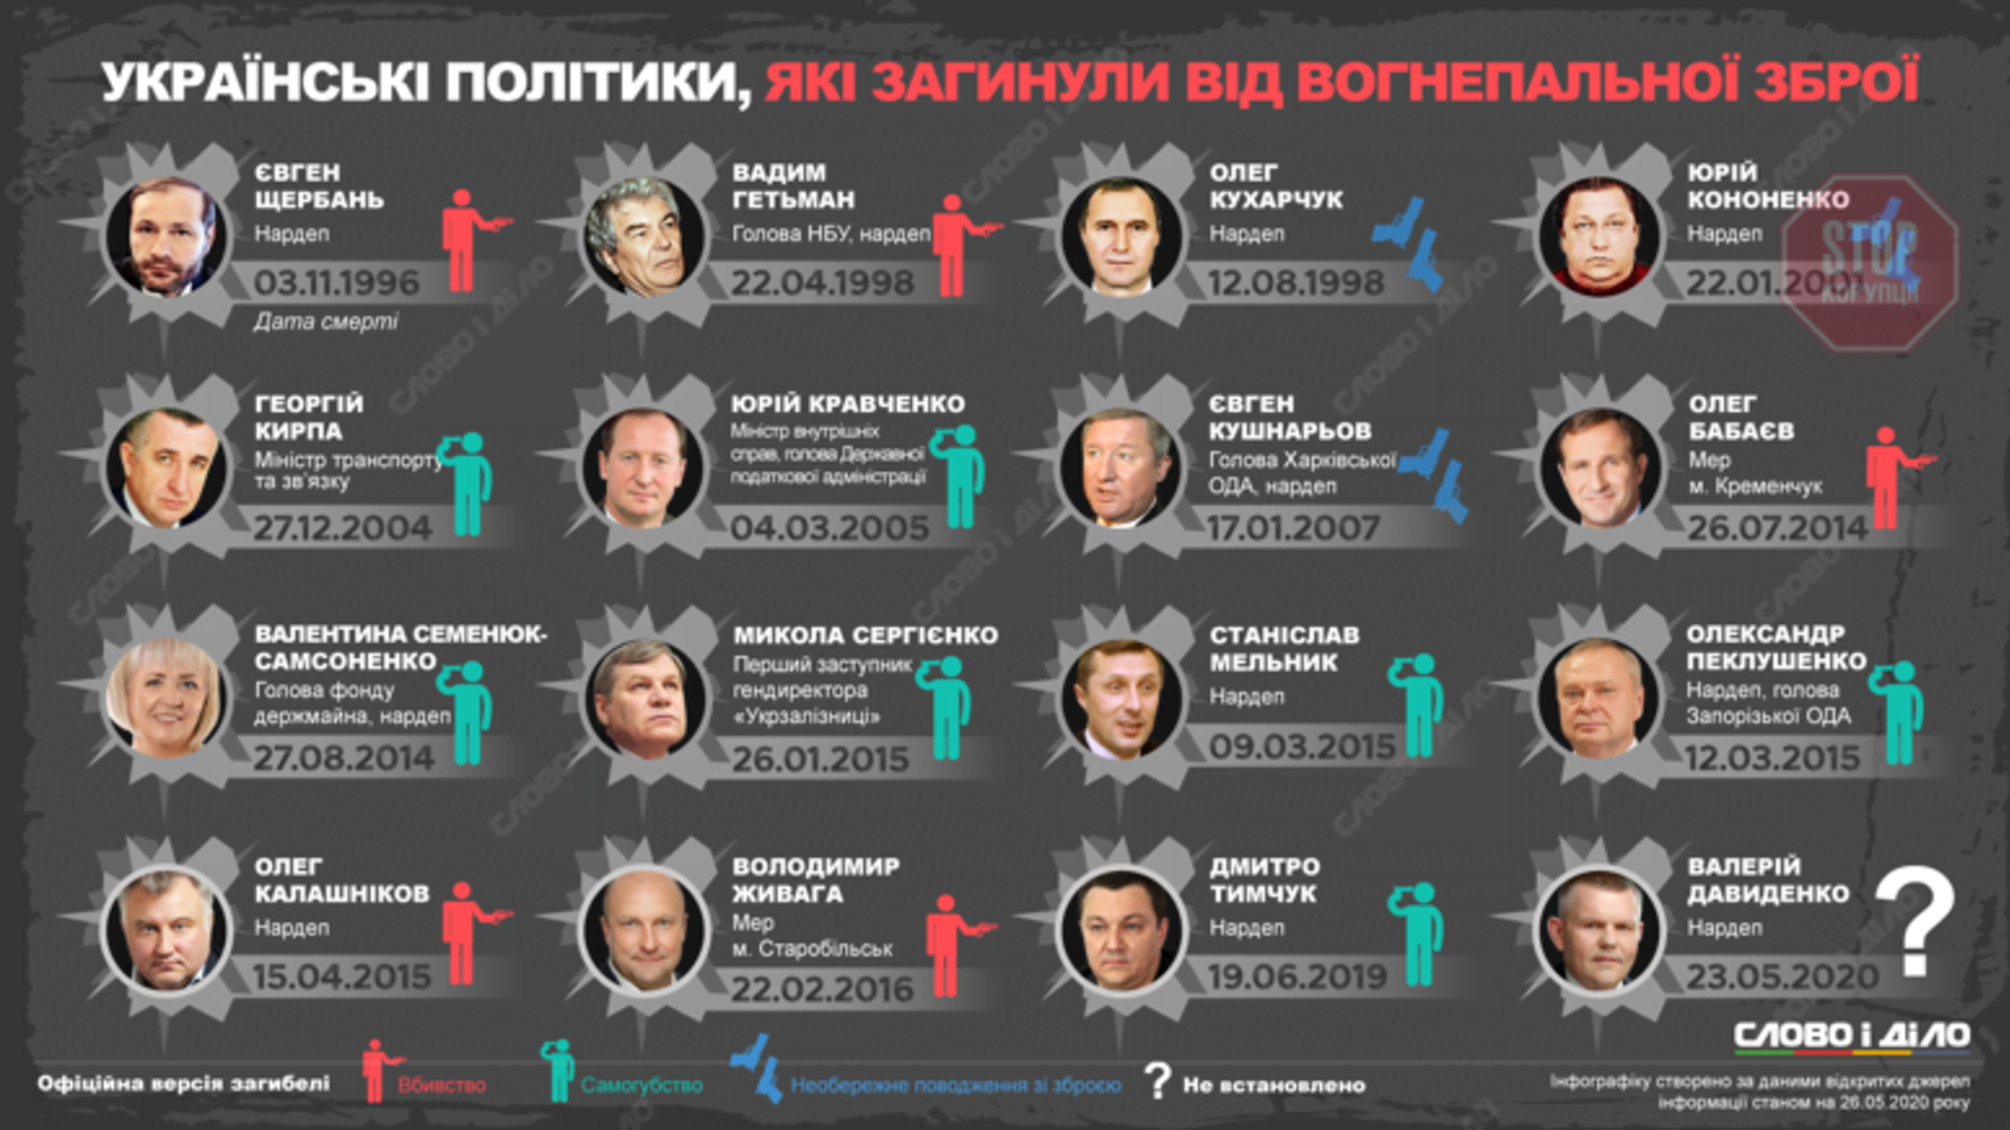 Які українські політики загинули від вогнепального поранення (список)